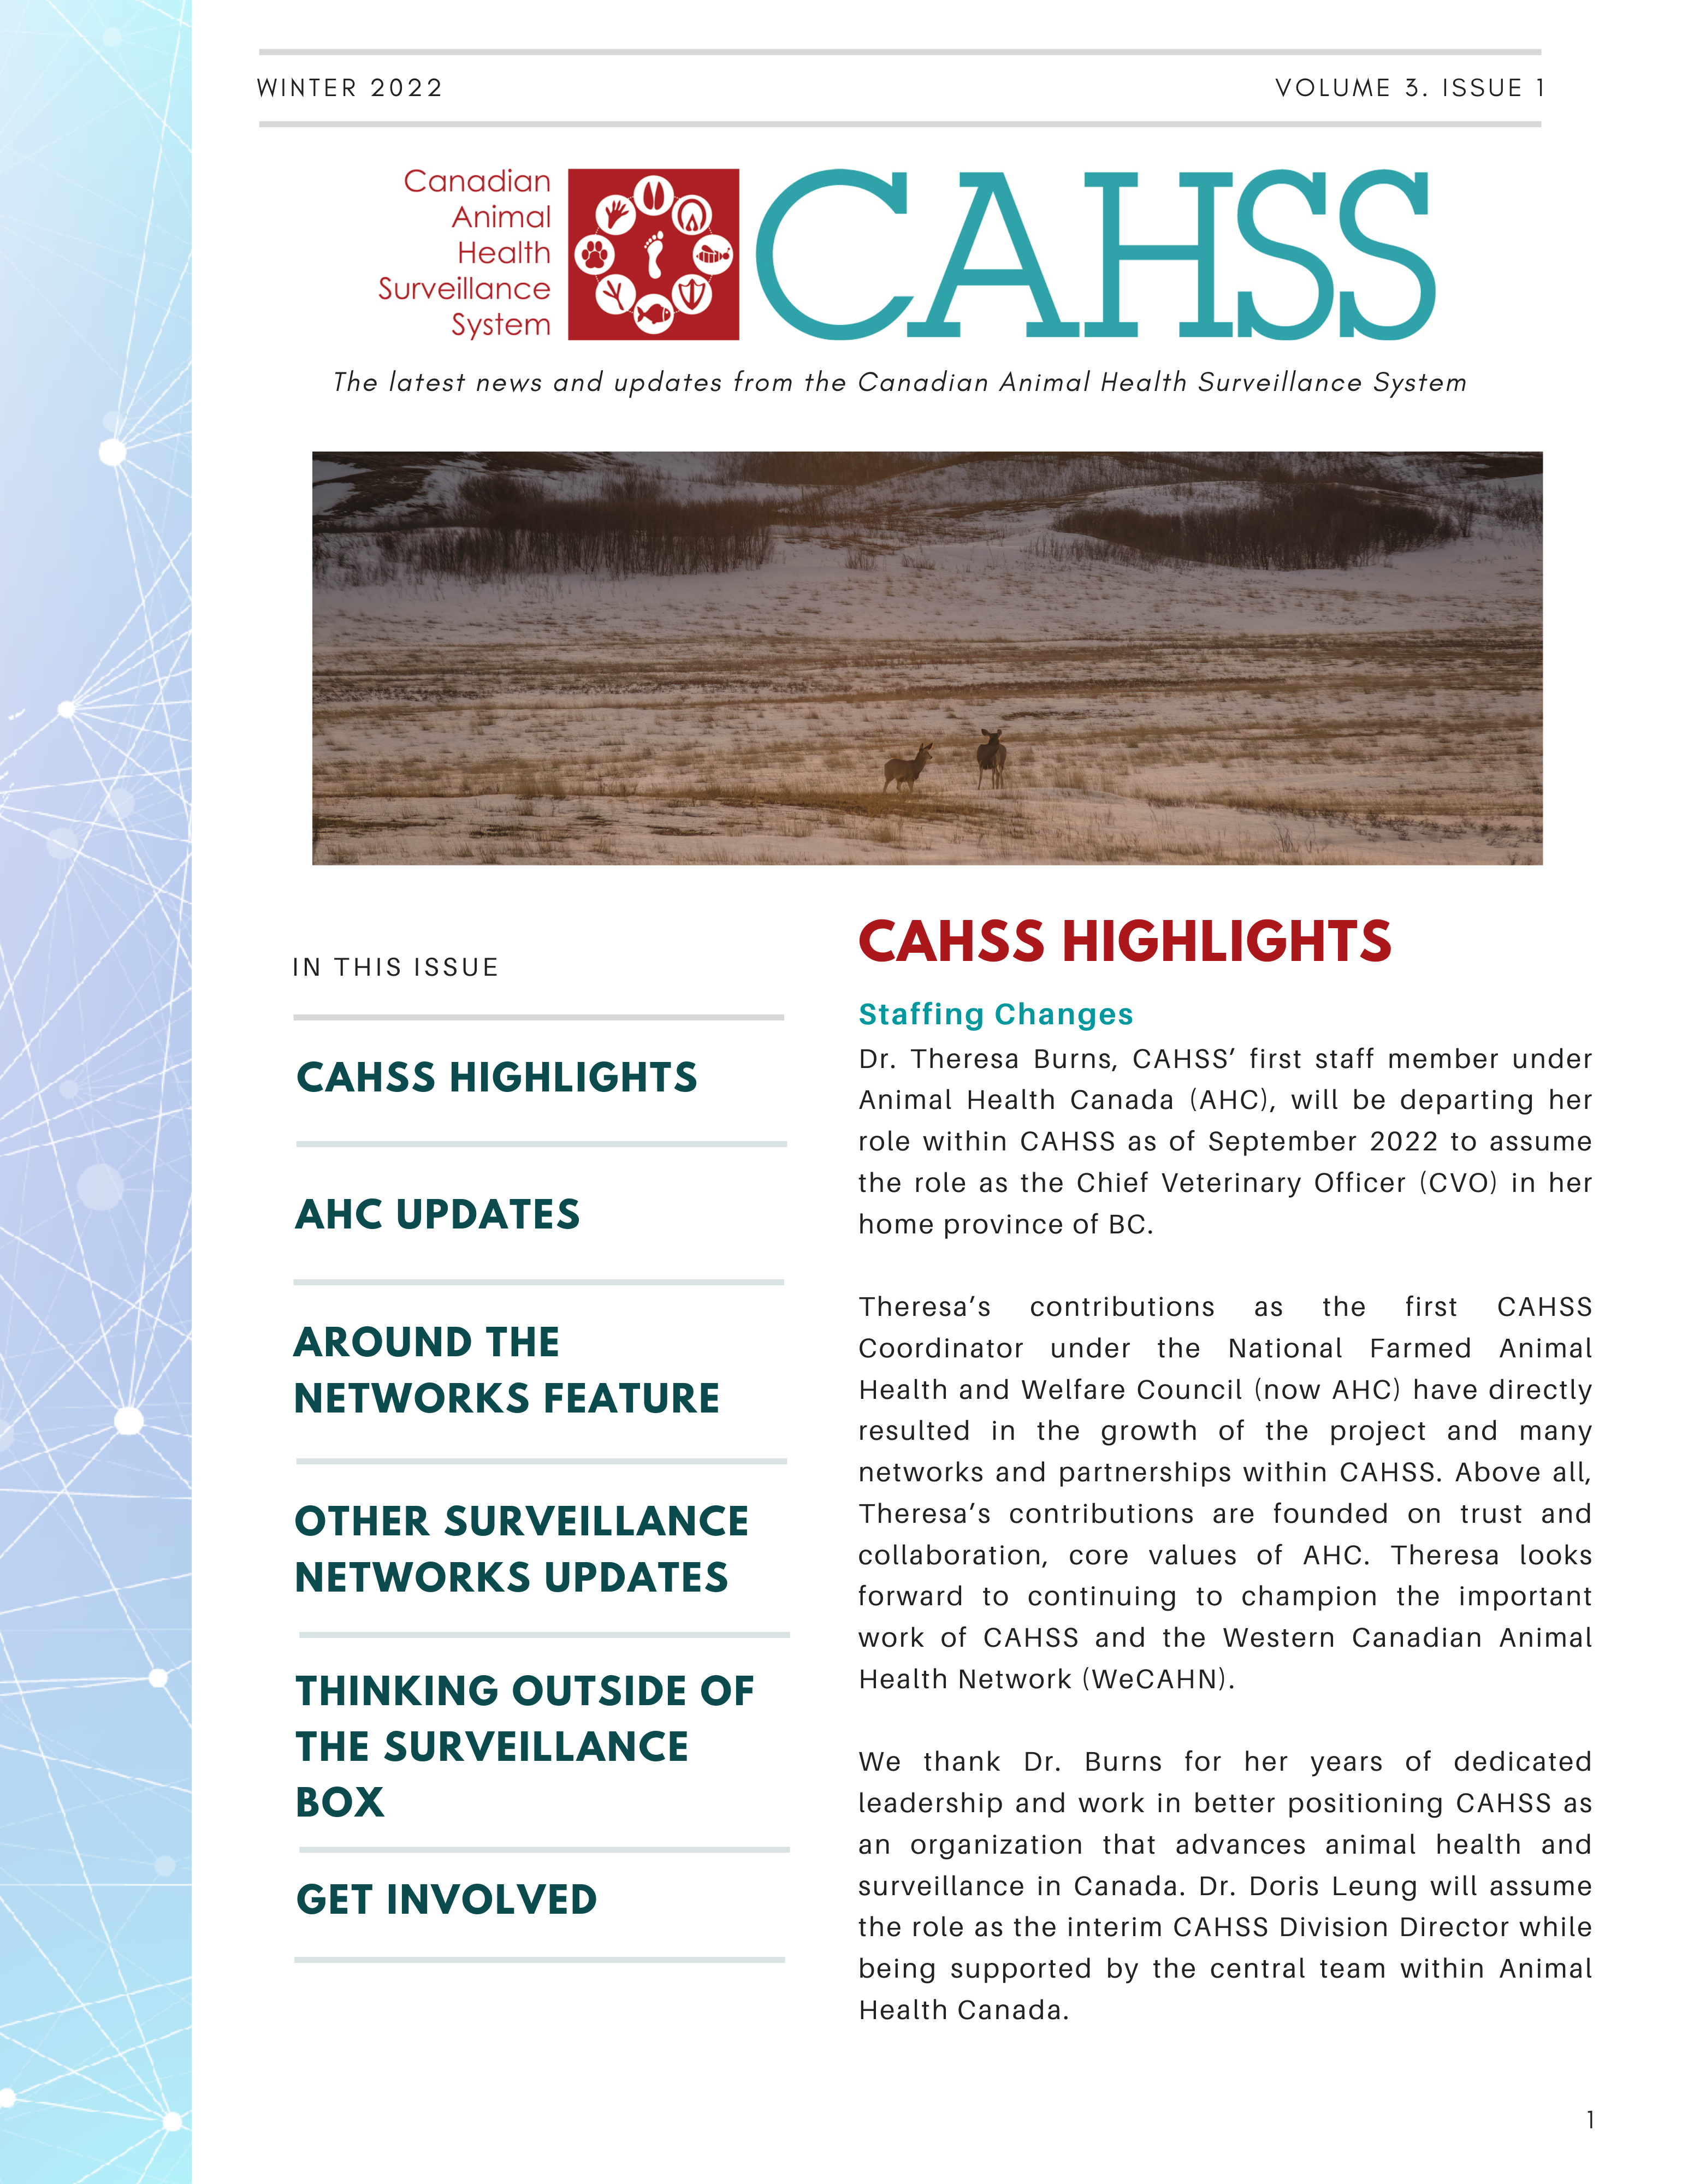 CAHSS winter newsletter cover